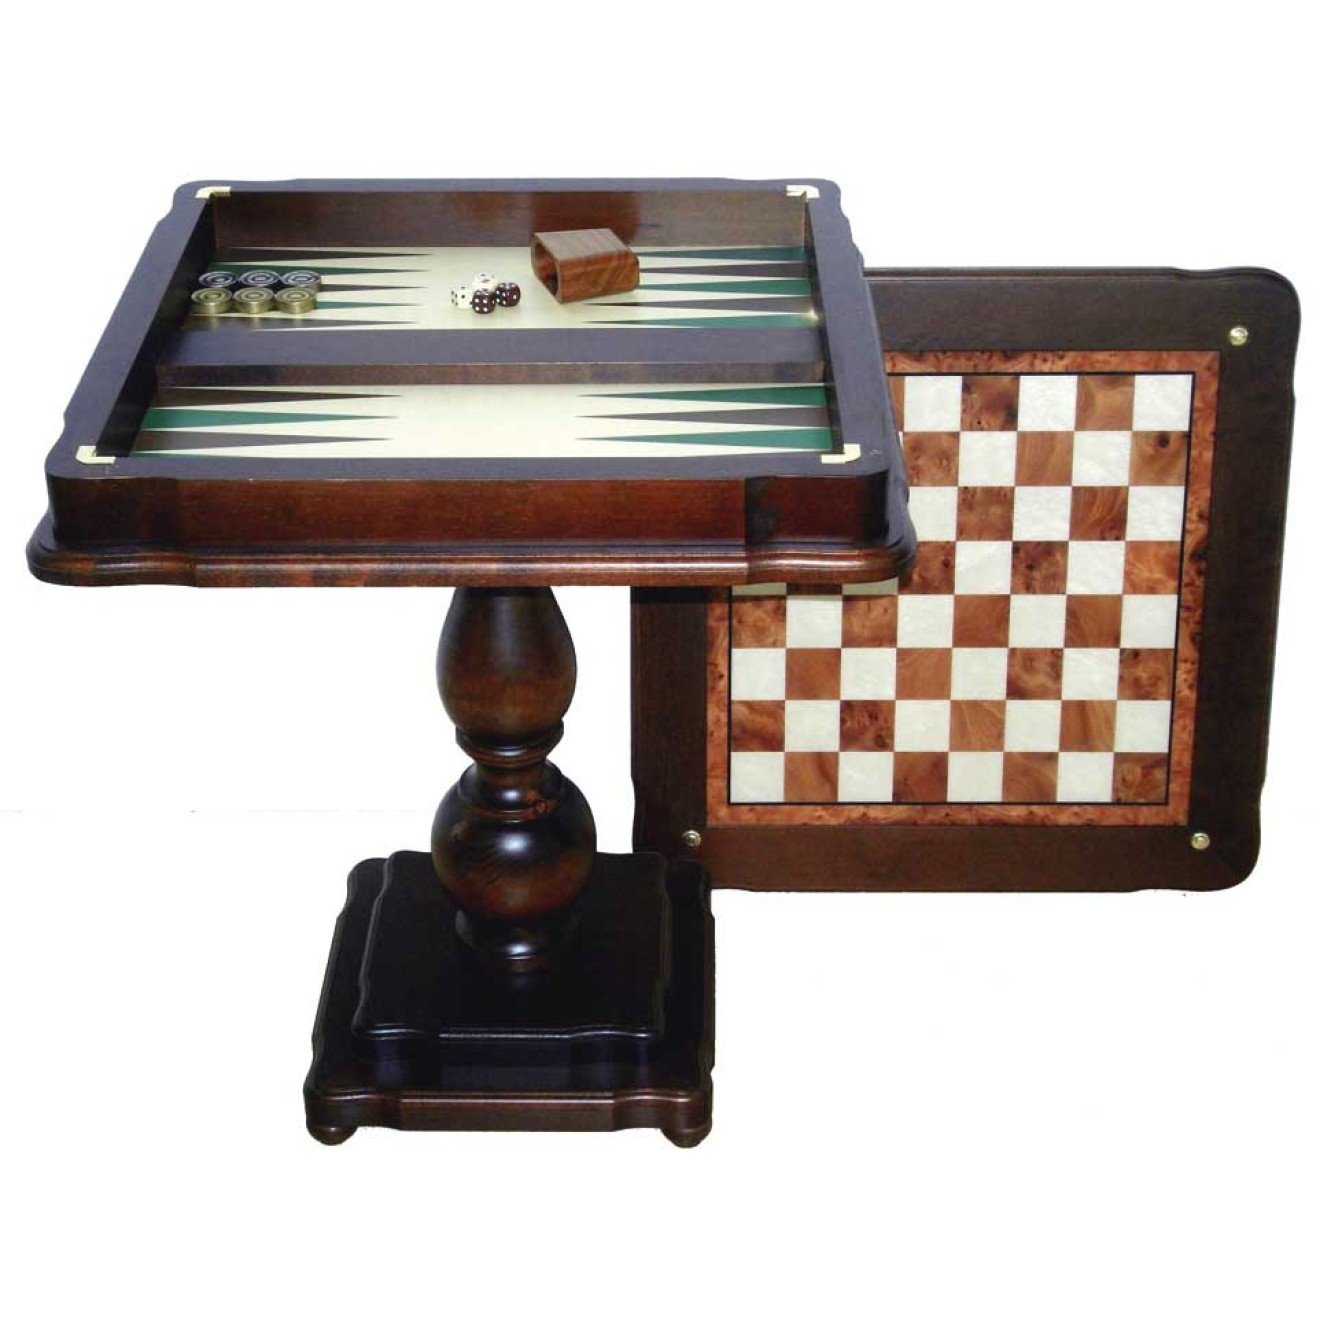 Backgammon Tisch